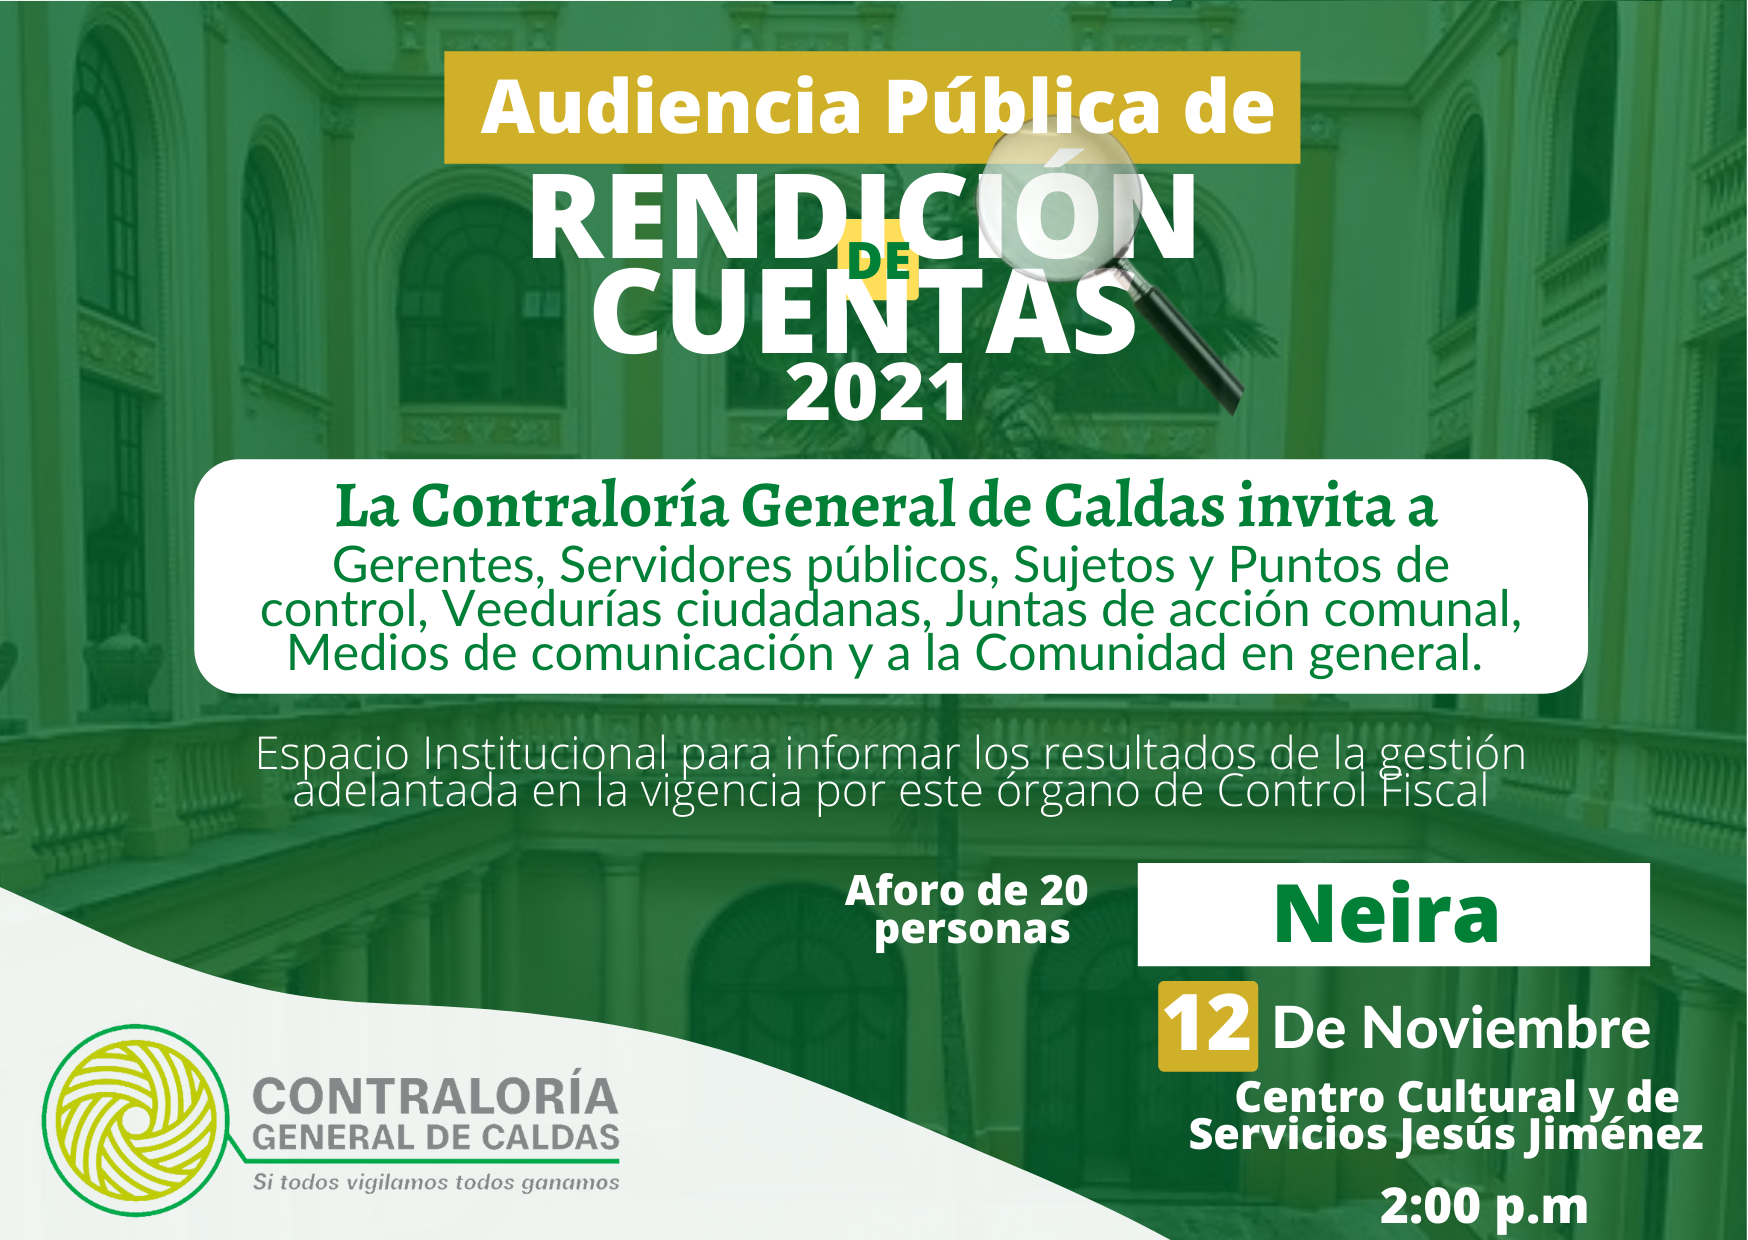 La Contraloría General de Caldas invita a la Audiencia Pública de Rendición de Cuentas que se realizará el 12 de Noviembre, en el Municipio de Neira.